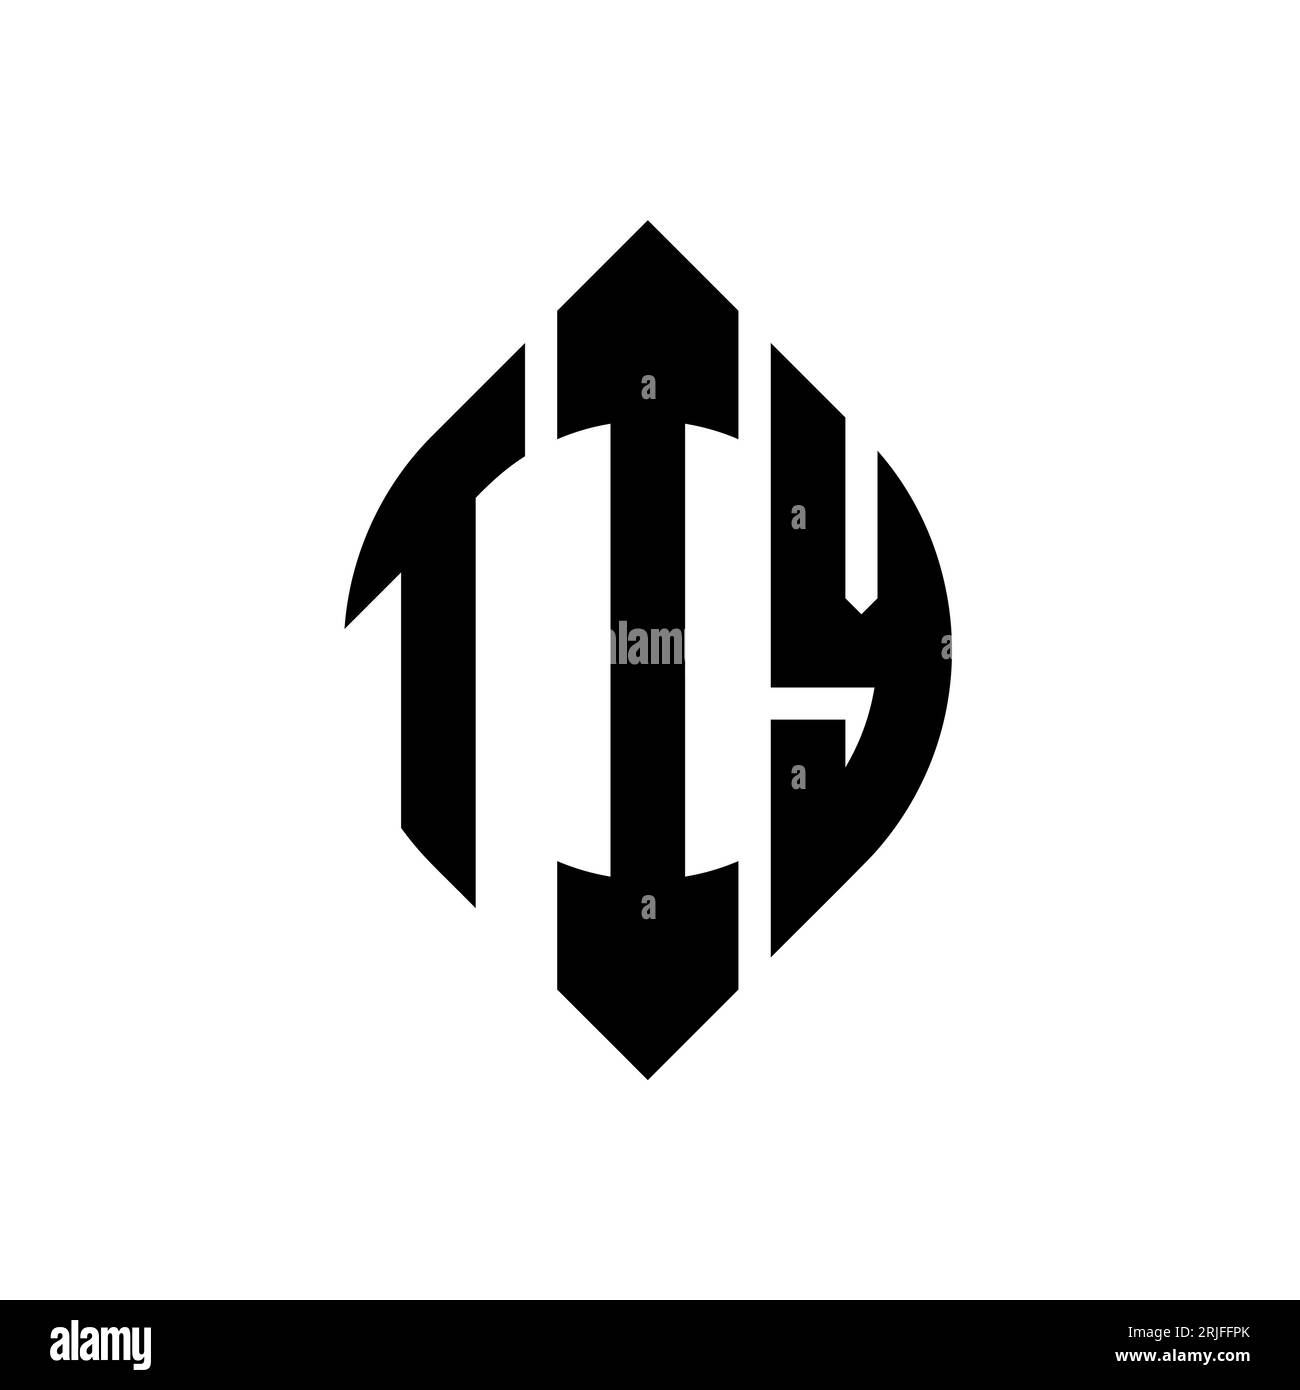 TIY-Logodesign mit kreisförmigem Buchstaben und Ellipsenform. TIY-Ellipsenbuchstaben im typografischen Stil. Die drei Initialen bilden ein kreisförmiges Logo. TIY CI Stock Vektor